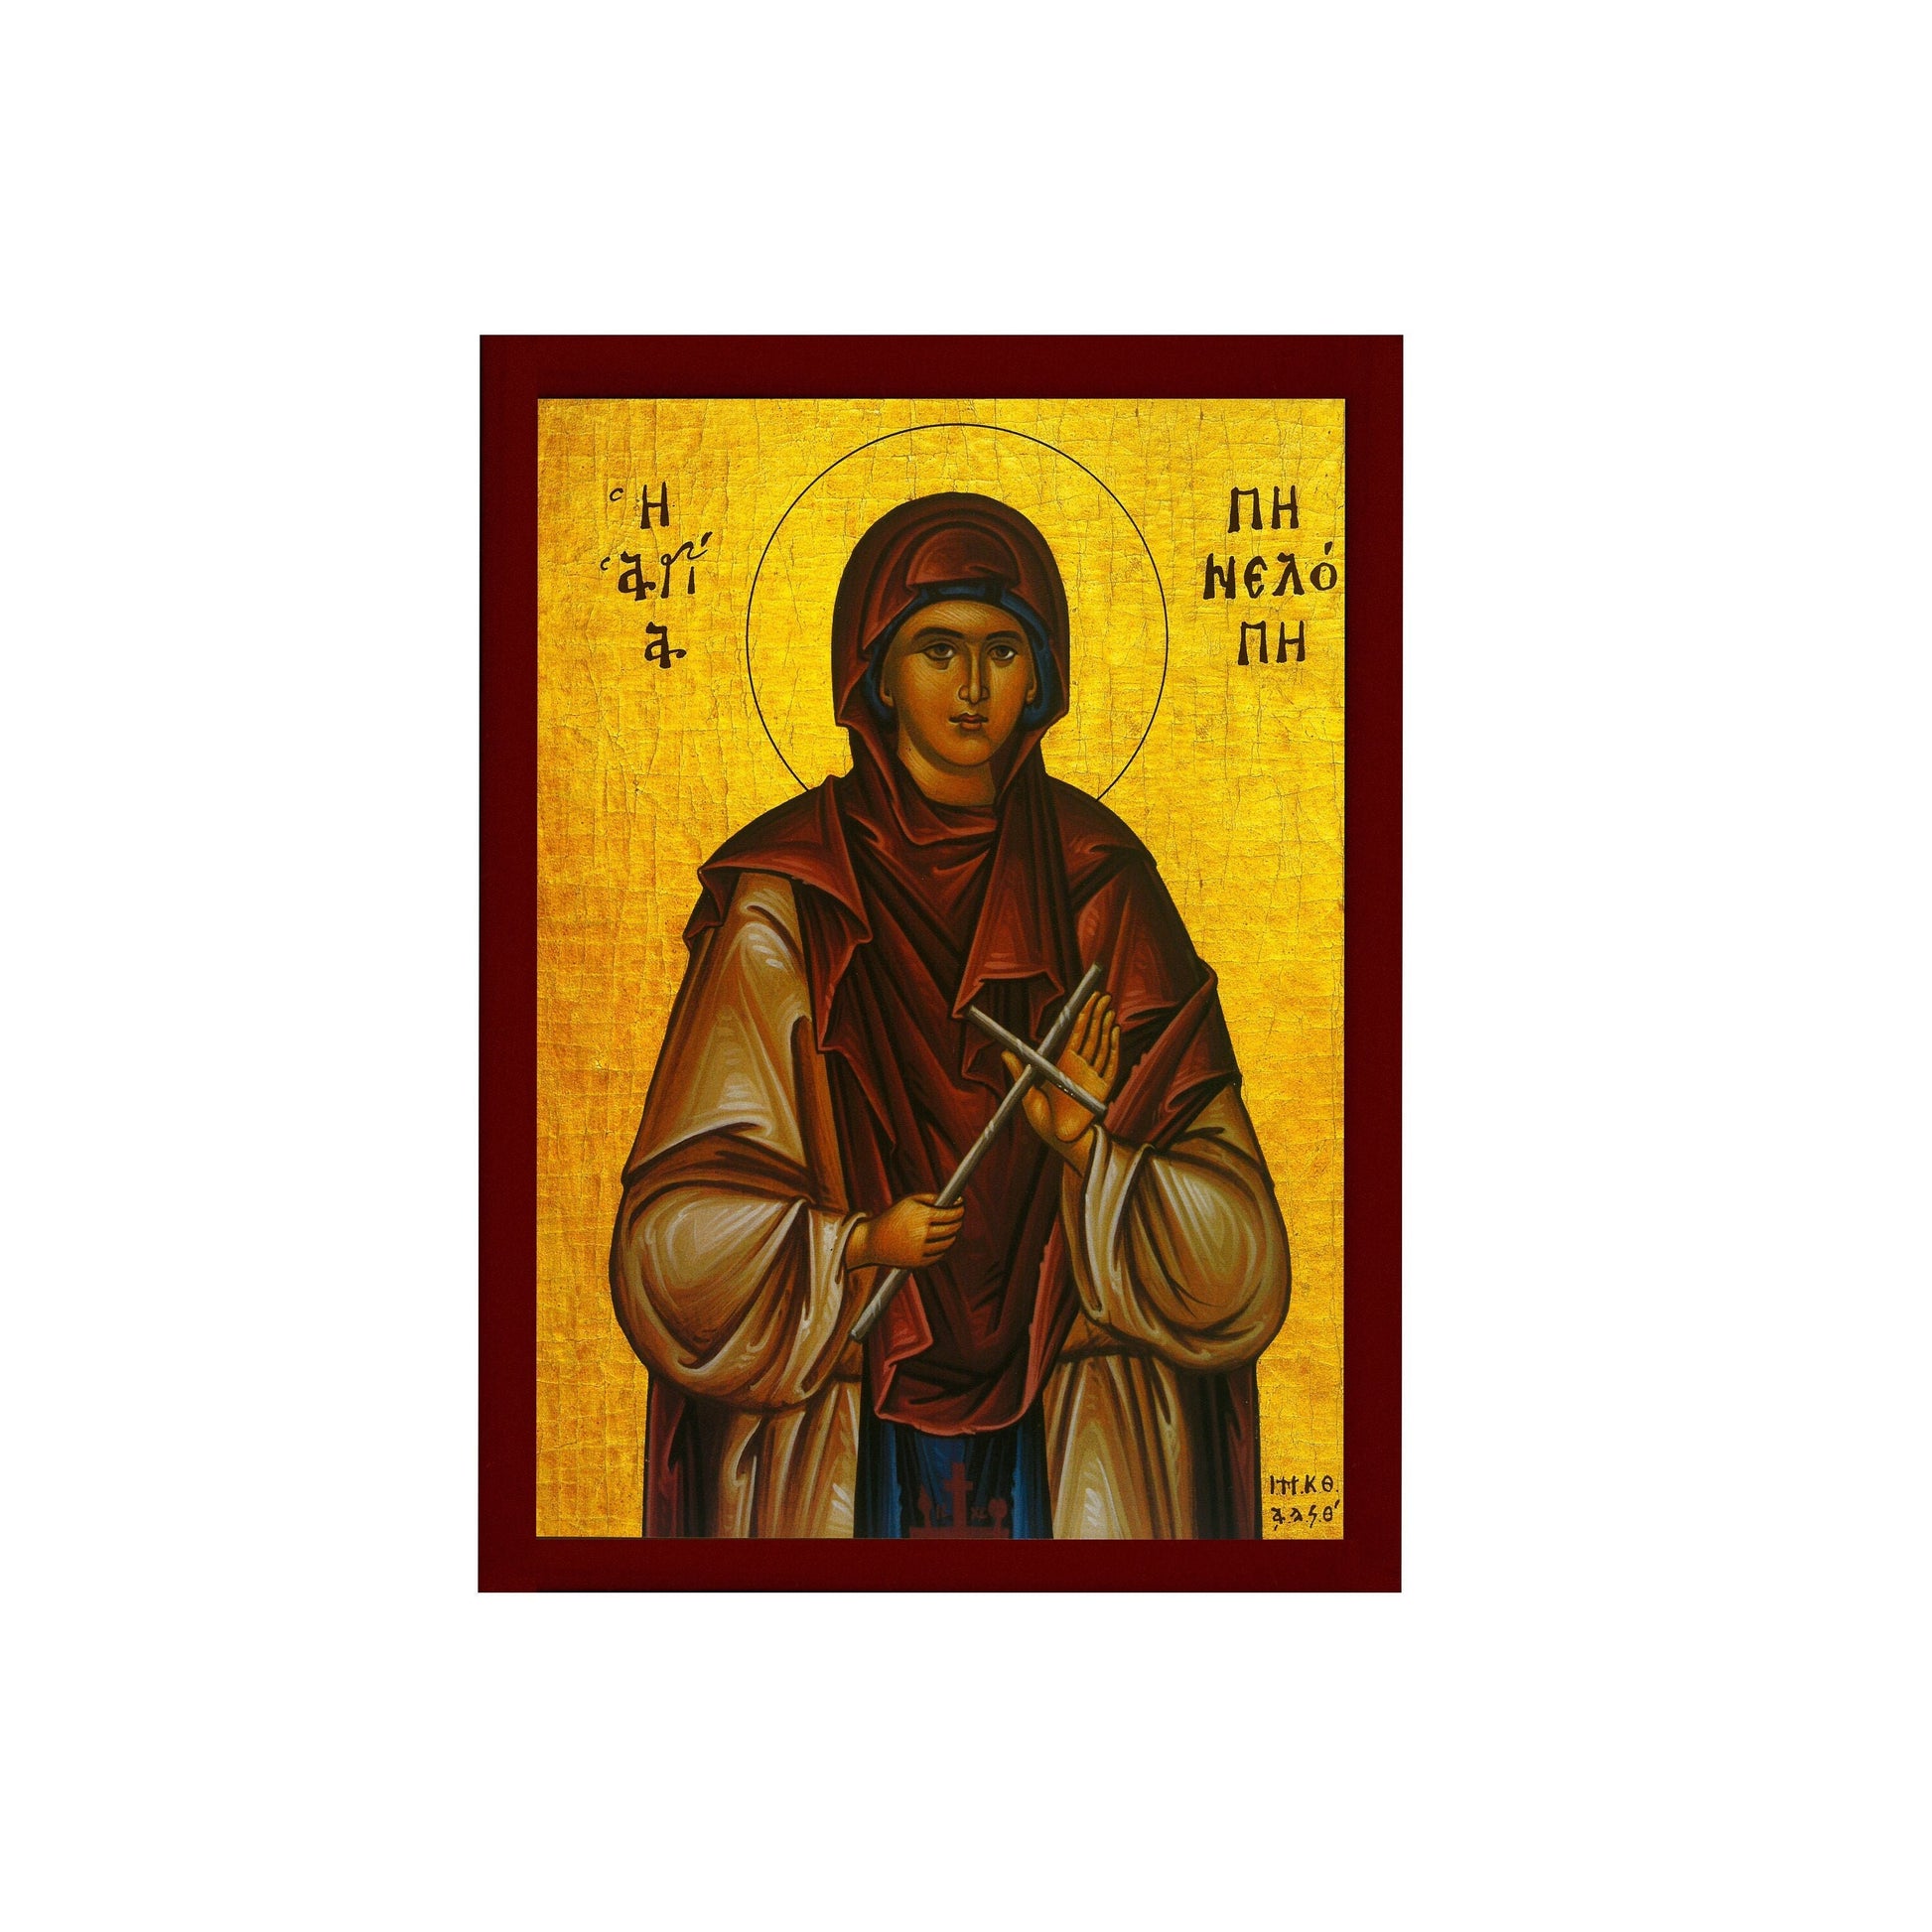 Saint Penelope icon, Handmade Greek Orthodox icon of St Penelope, Byzantine art wall hanging icon wood plaque, religious decor TheHolyArt